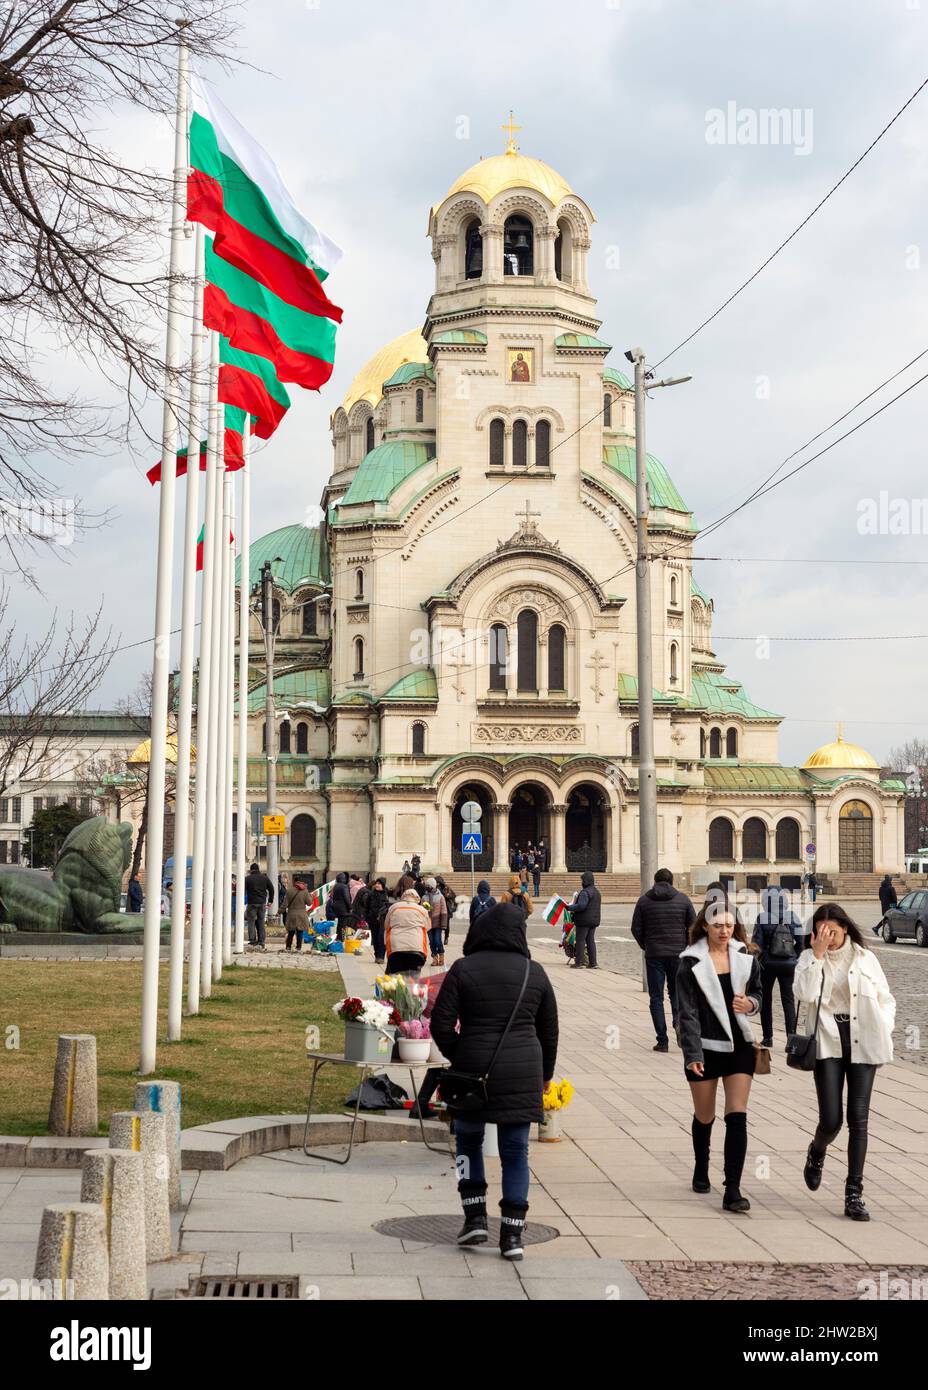 Sofia Bulgarien Nationalflaggen fliegen an der Alexander-Newski-Kathedrale und St. Sophienkirche am Denkmal für den Unbekannten Krieger in Respekt und Gedenken an die bulgarischen Soldaten, die in Kriegen ihr Leben verloren haben, während Bulgaren den Bulgarischen Nationalfeiertag feiern. Stockfoto